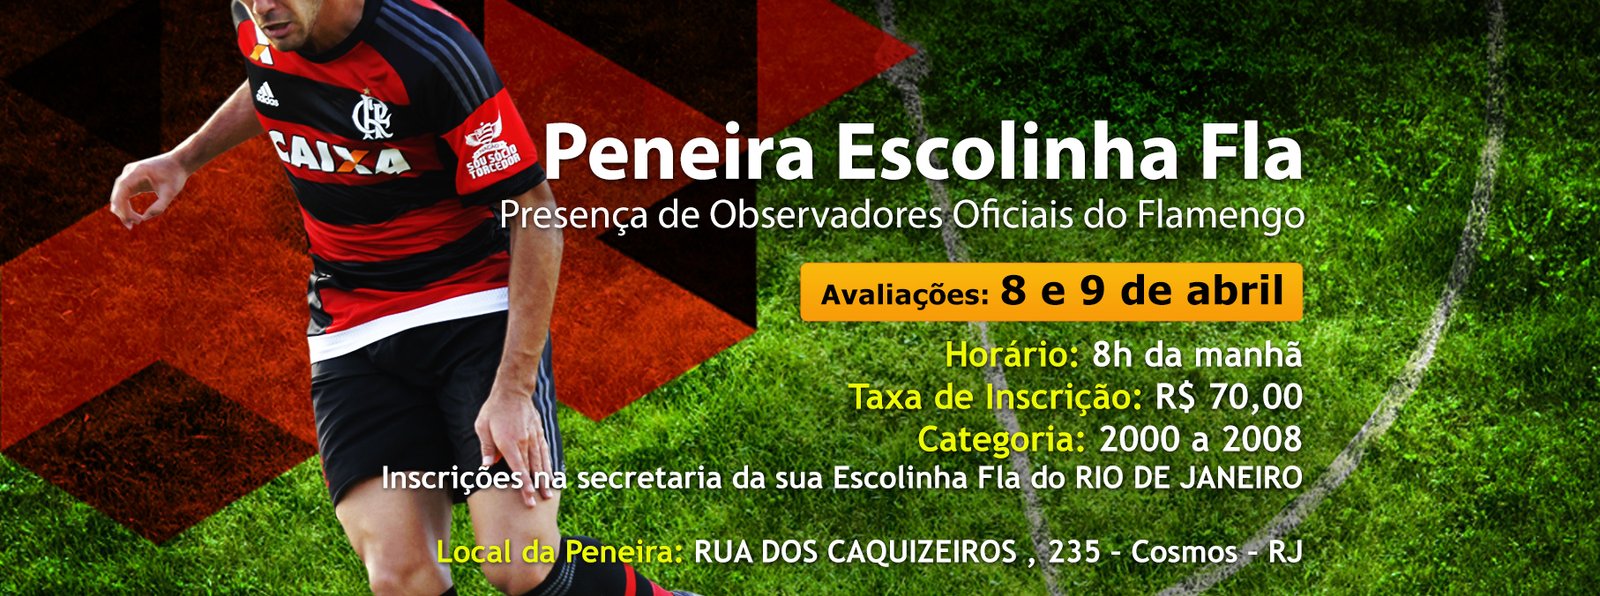 Meu Mengão - Calendário do Flamengo no mês de setembro!